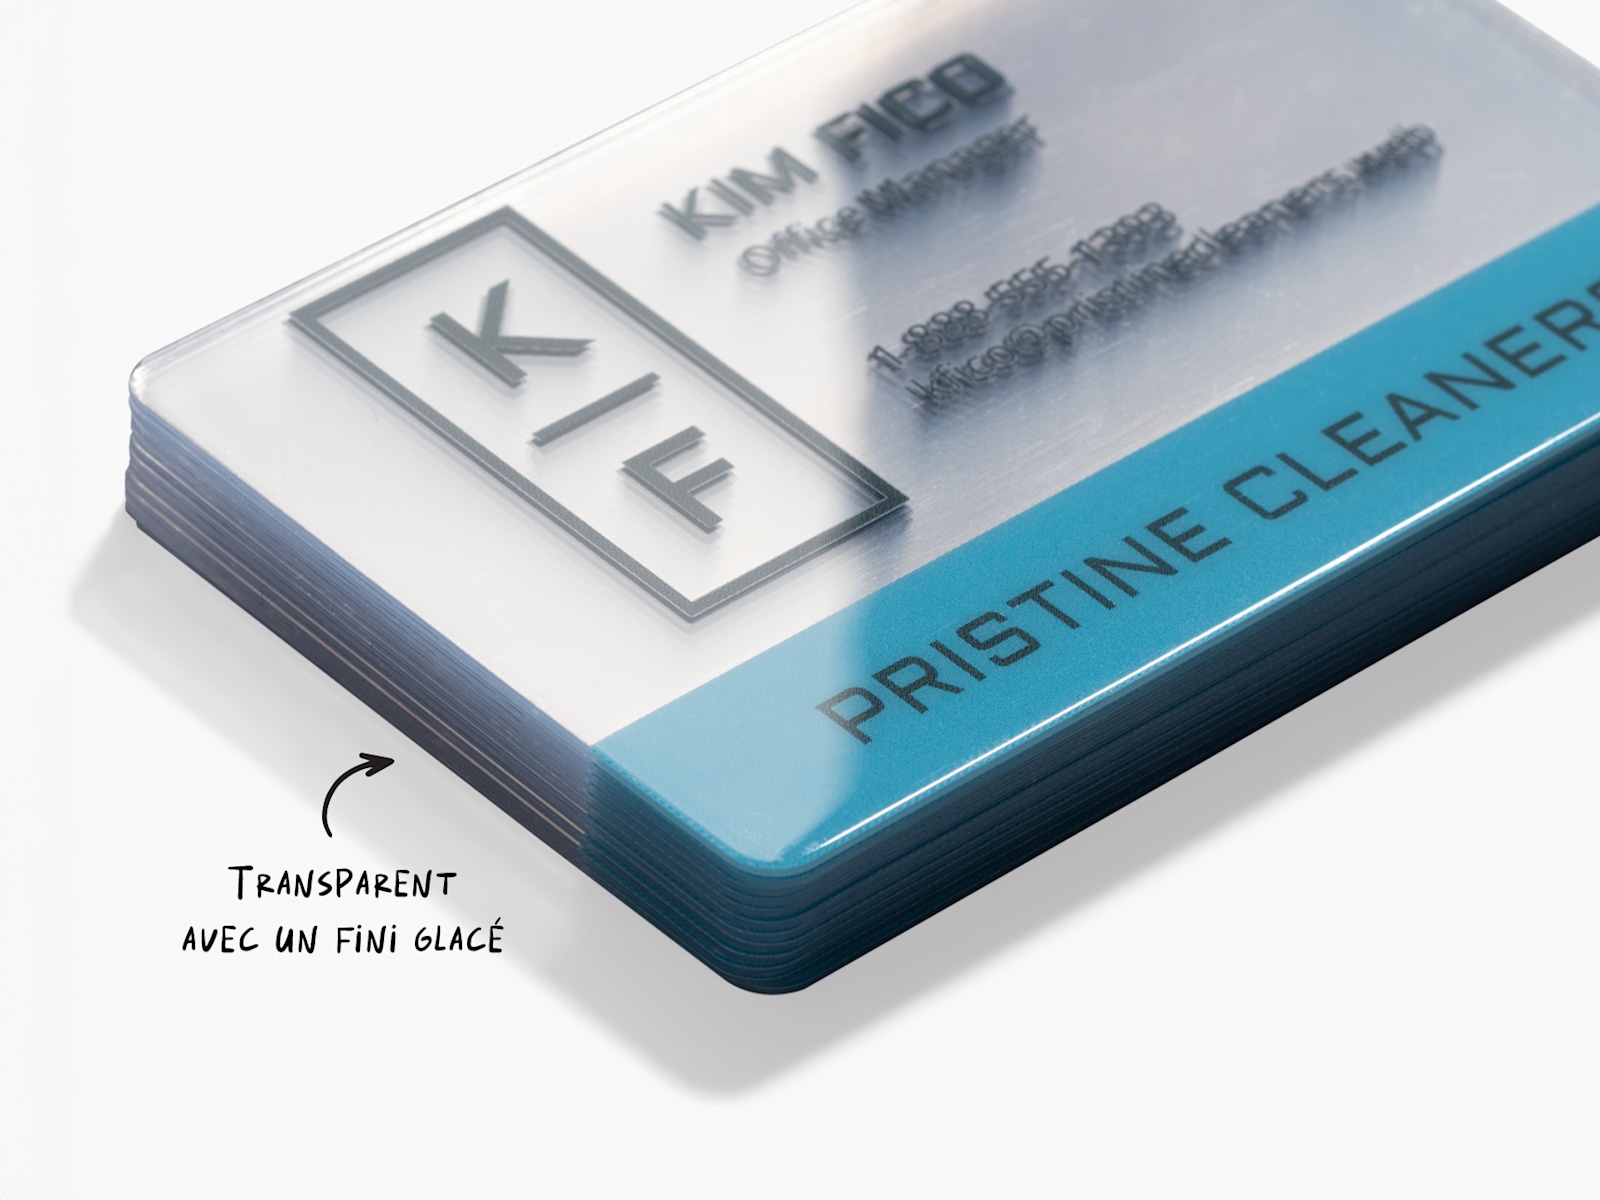 Une pile de cartes d’affaires en plastique transparent faisant la promotion d'une entreprise de nettoyage, avec la mention qu'elles sont transparentes avec une finition brillante.